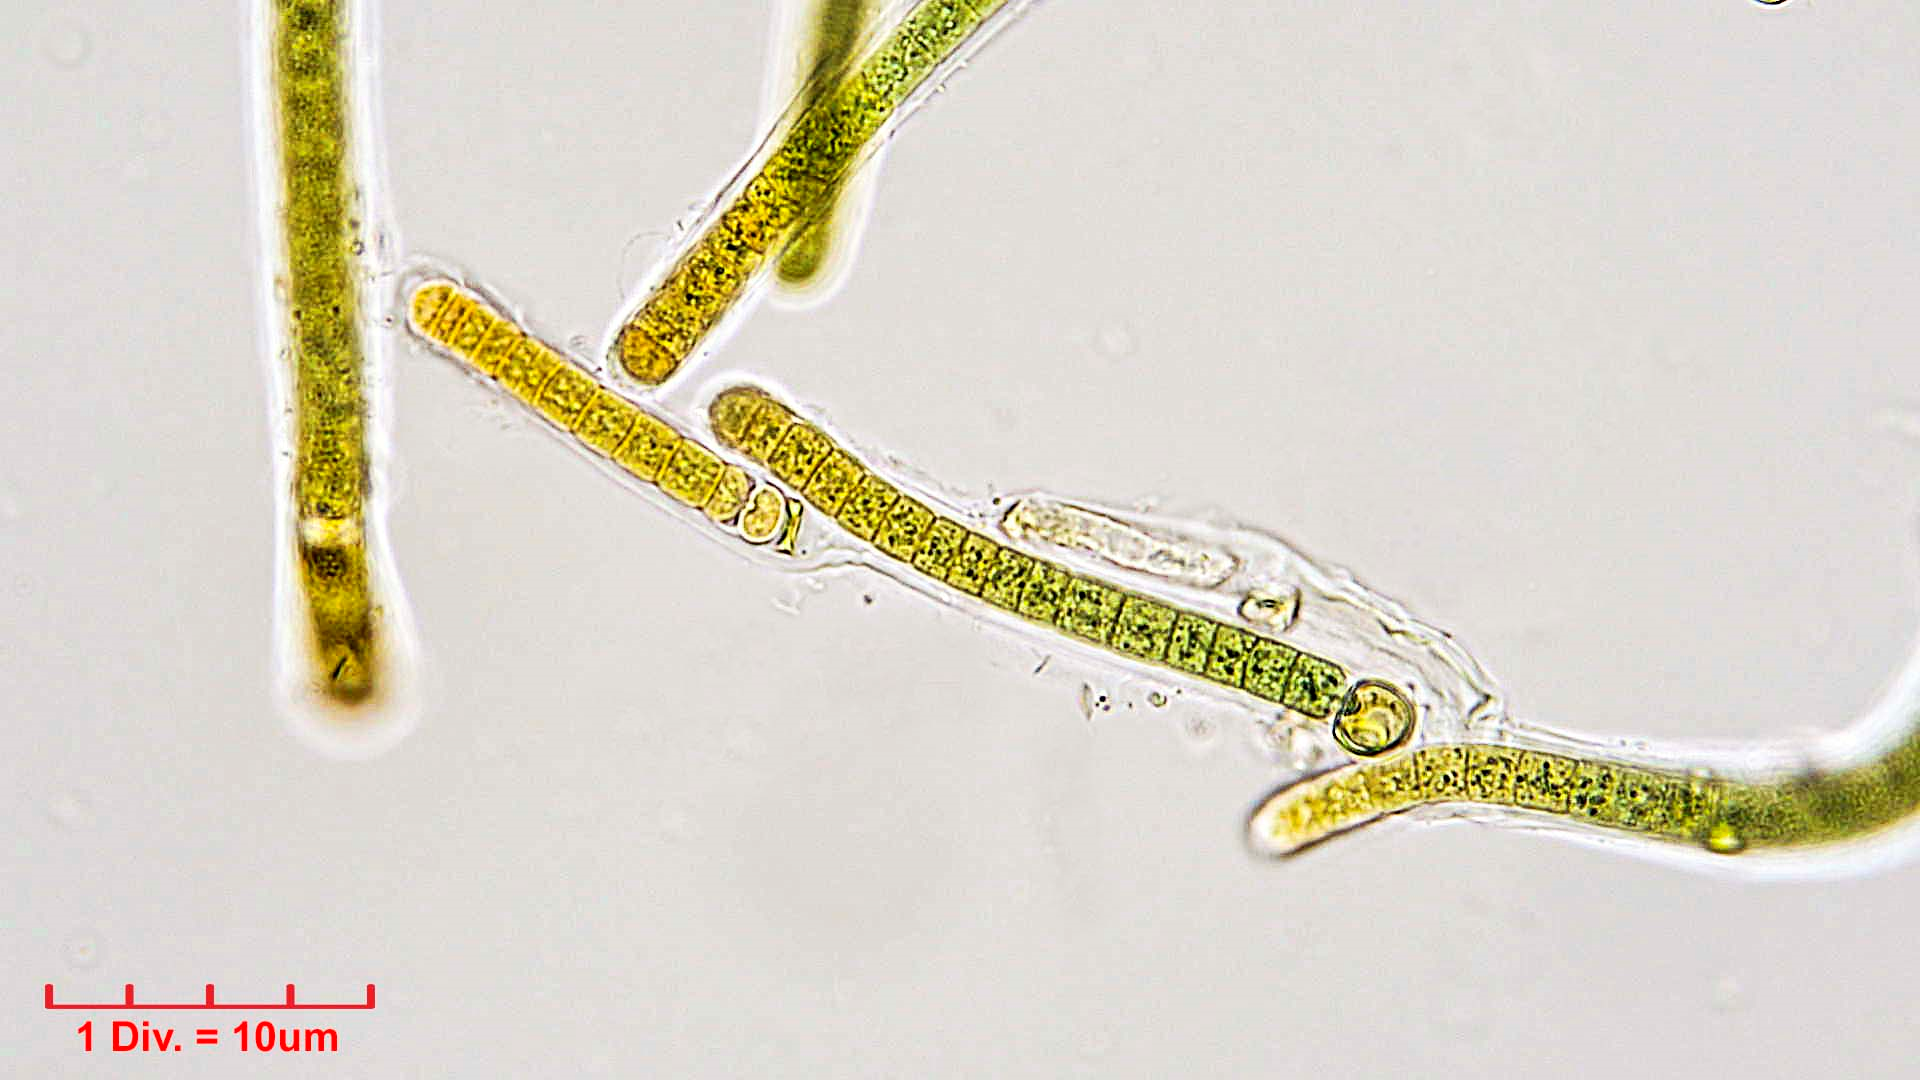 ././Cyanobacteria/Nostocales/Tolypothrichaceae/Tolypothrix/calcarata/tolypothrix-calcarata-321.png